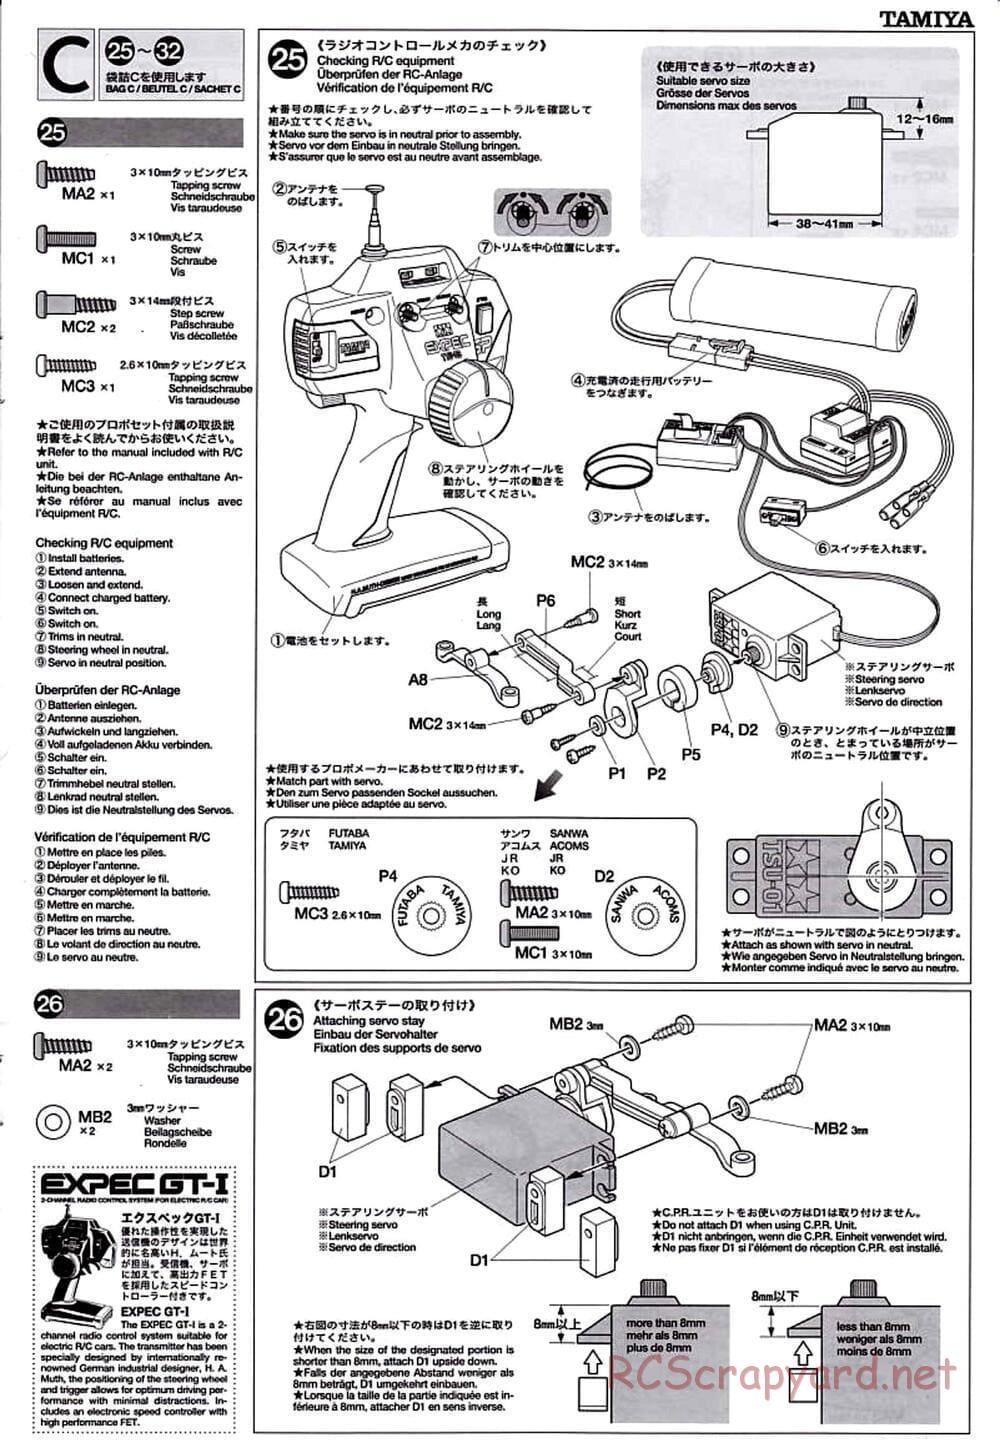 Tamiya - TT-01D Chassis - Manual - Page 13